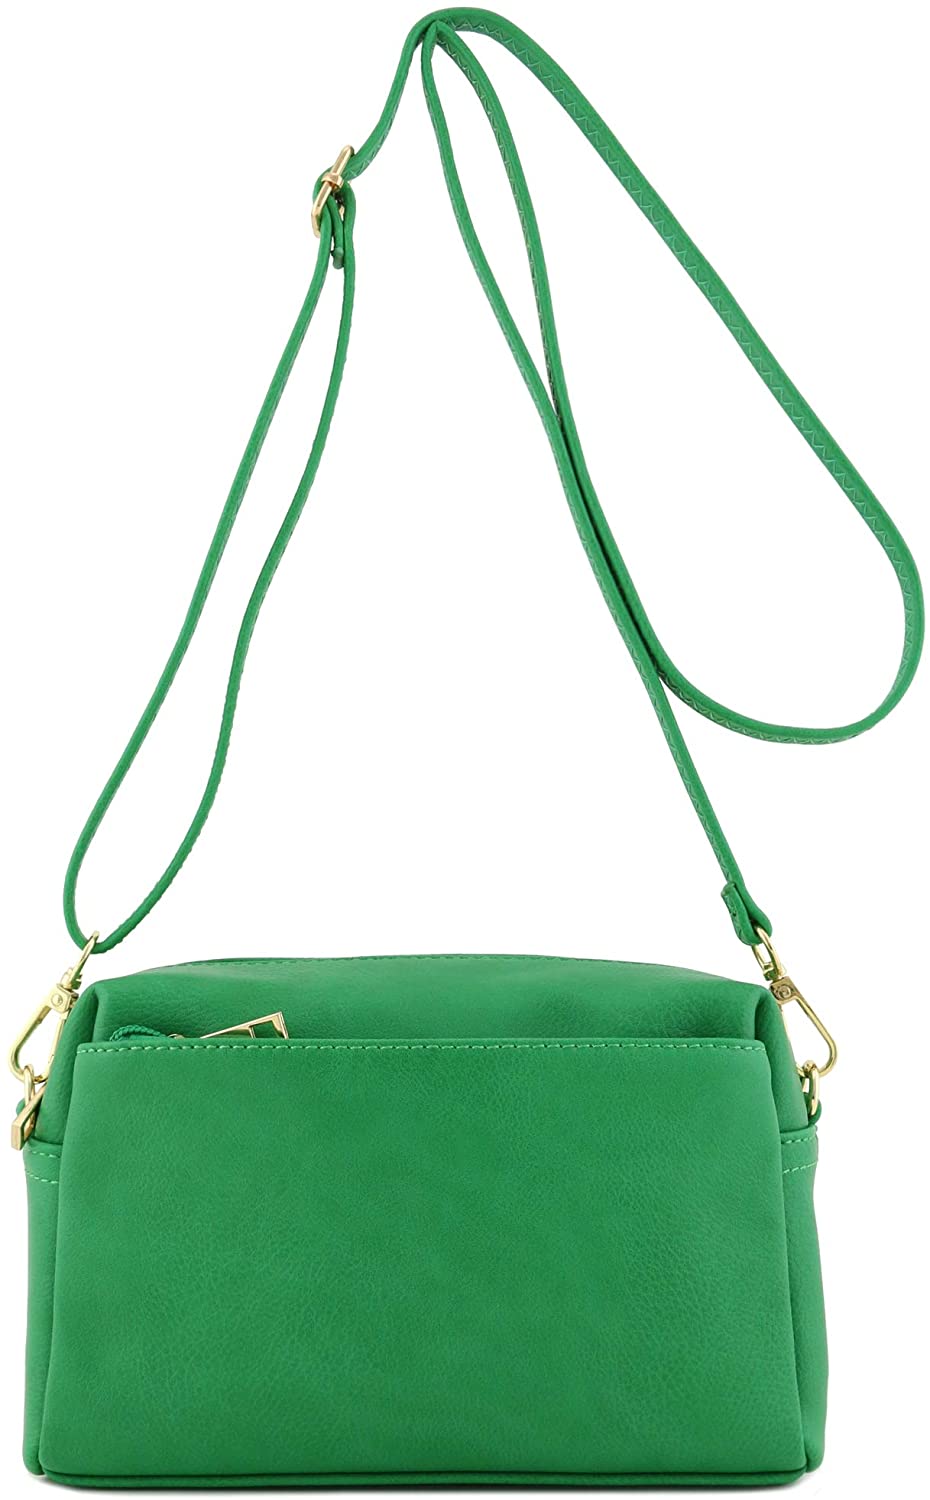 Triple Zip Hipster Crossbody Bag in Perennials Noir Dot – Little Green Apple